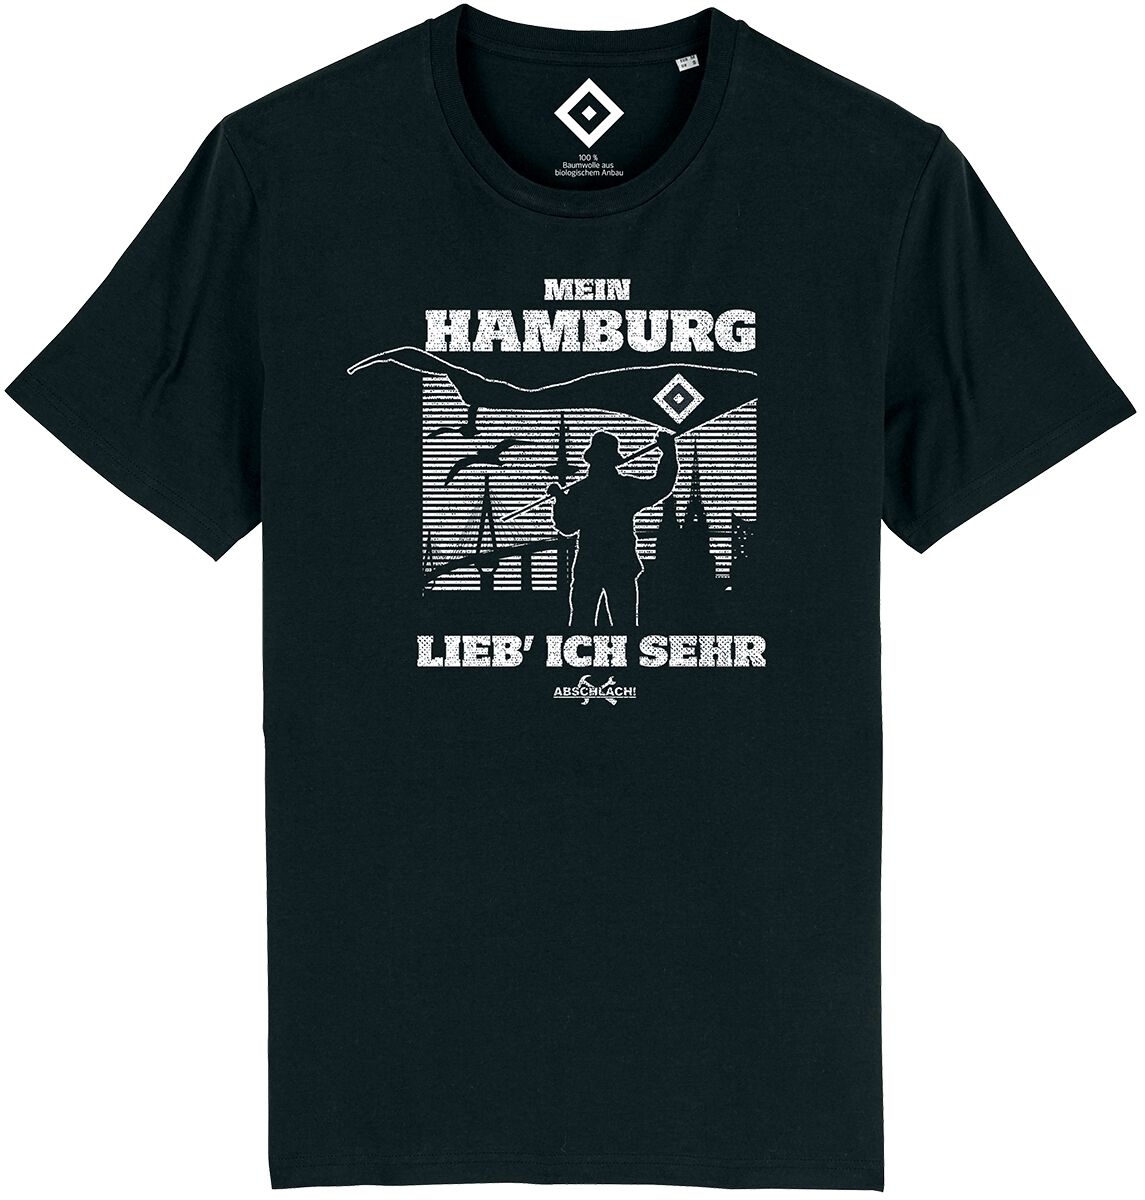 Hamburger SV T-Shirt - Mein Hamburg - Abschlach! - S bis 4XL - für Männer - Größe 4XL - schwarz